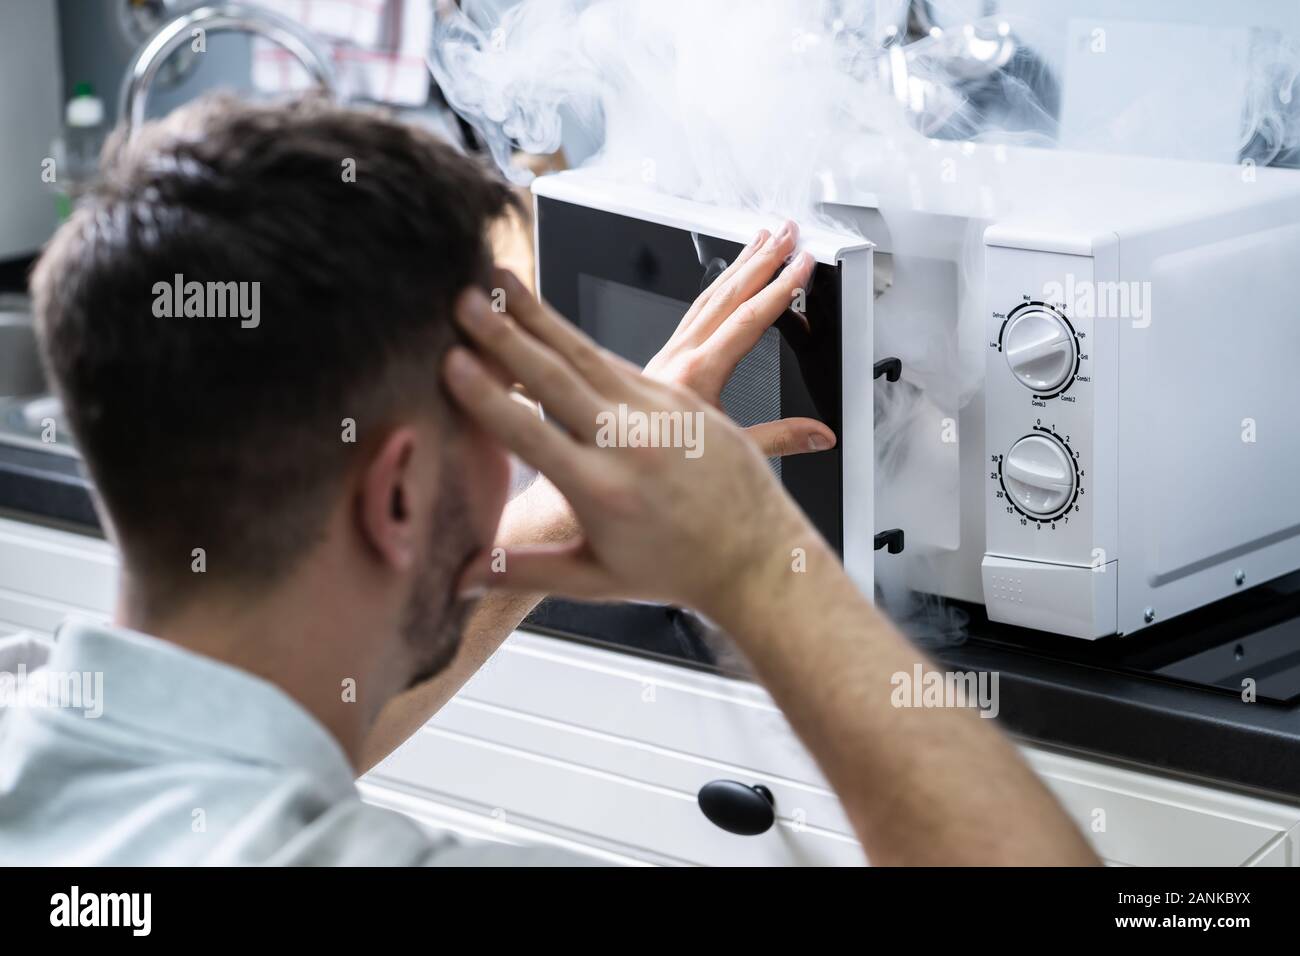 Jeune homme pulvérisant extincteur sur le four à micro-ondes dans la cuisine Banque D'Images